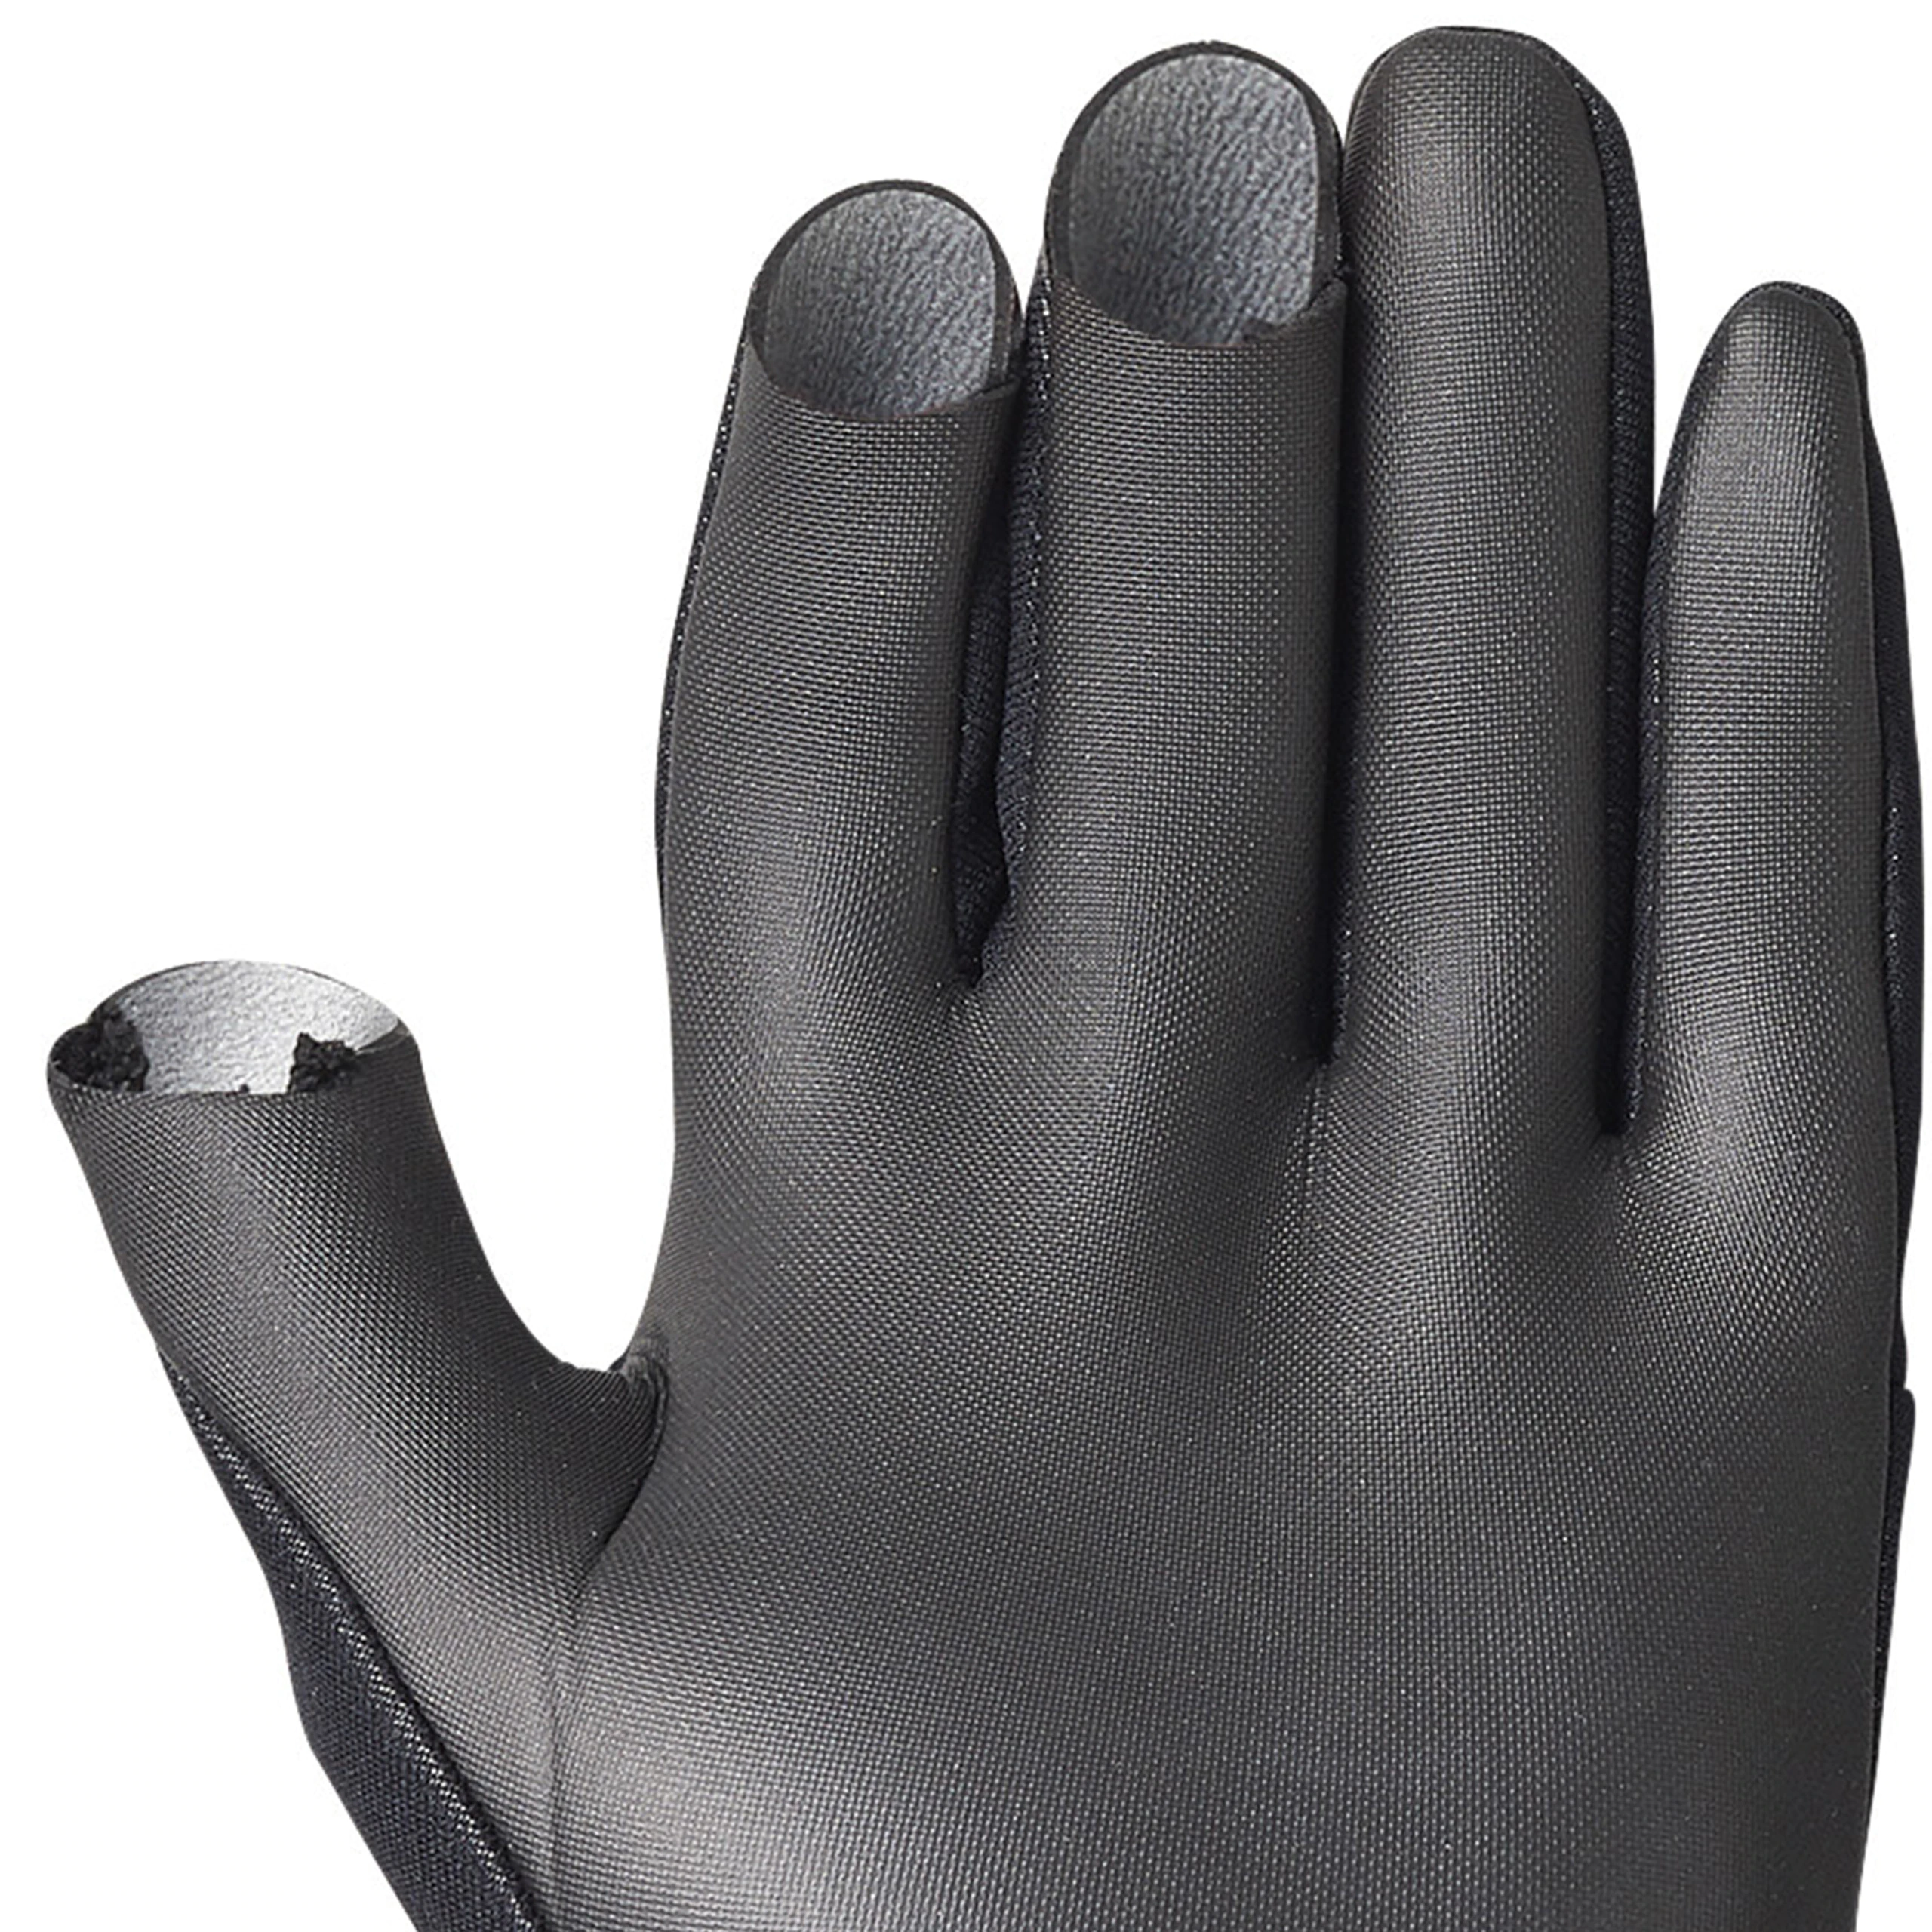 GL-011V 氯丁橡膠3指出手套 | 821010